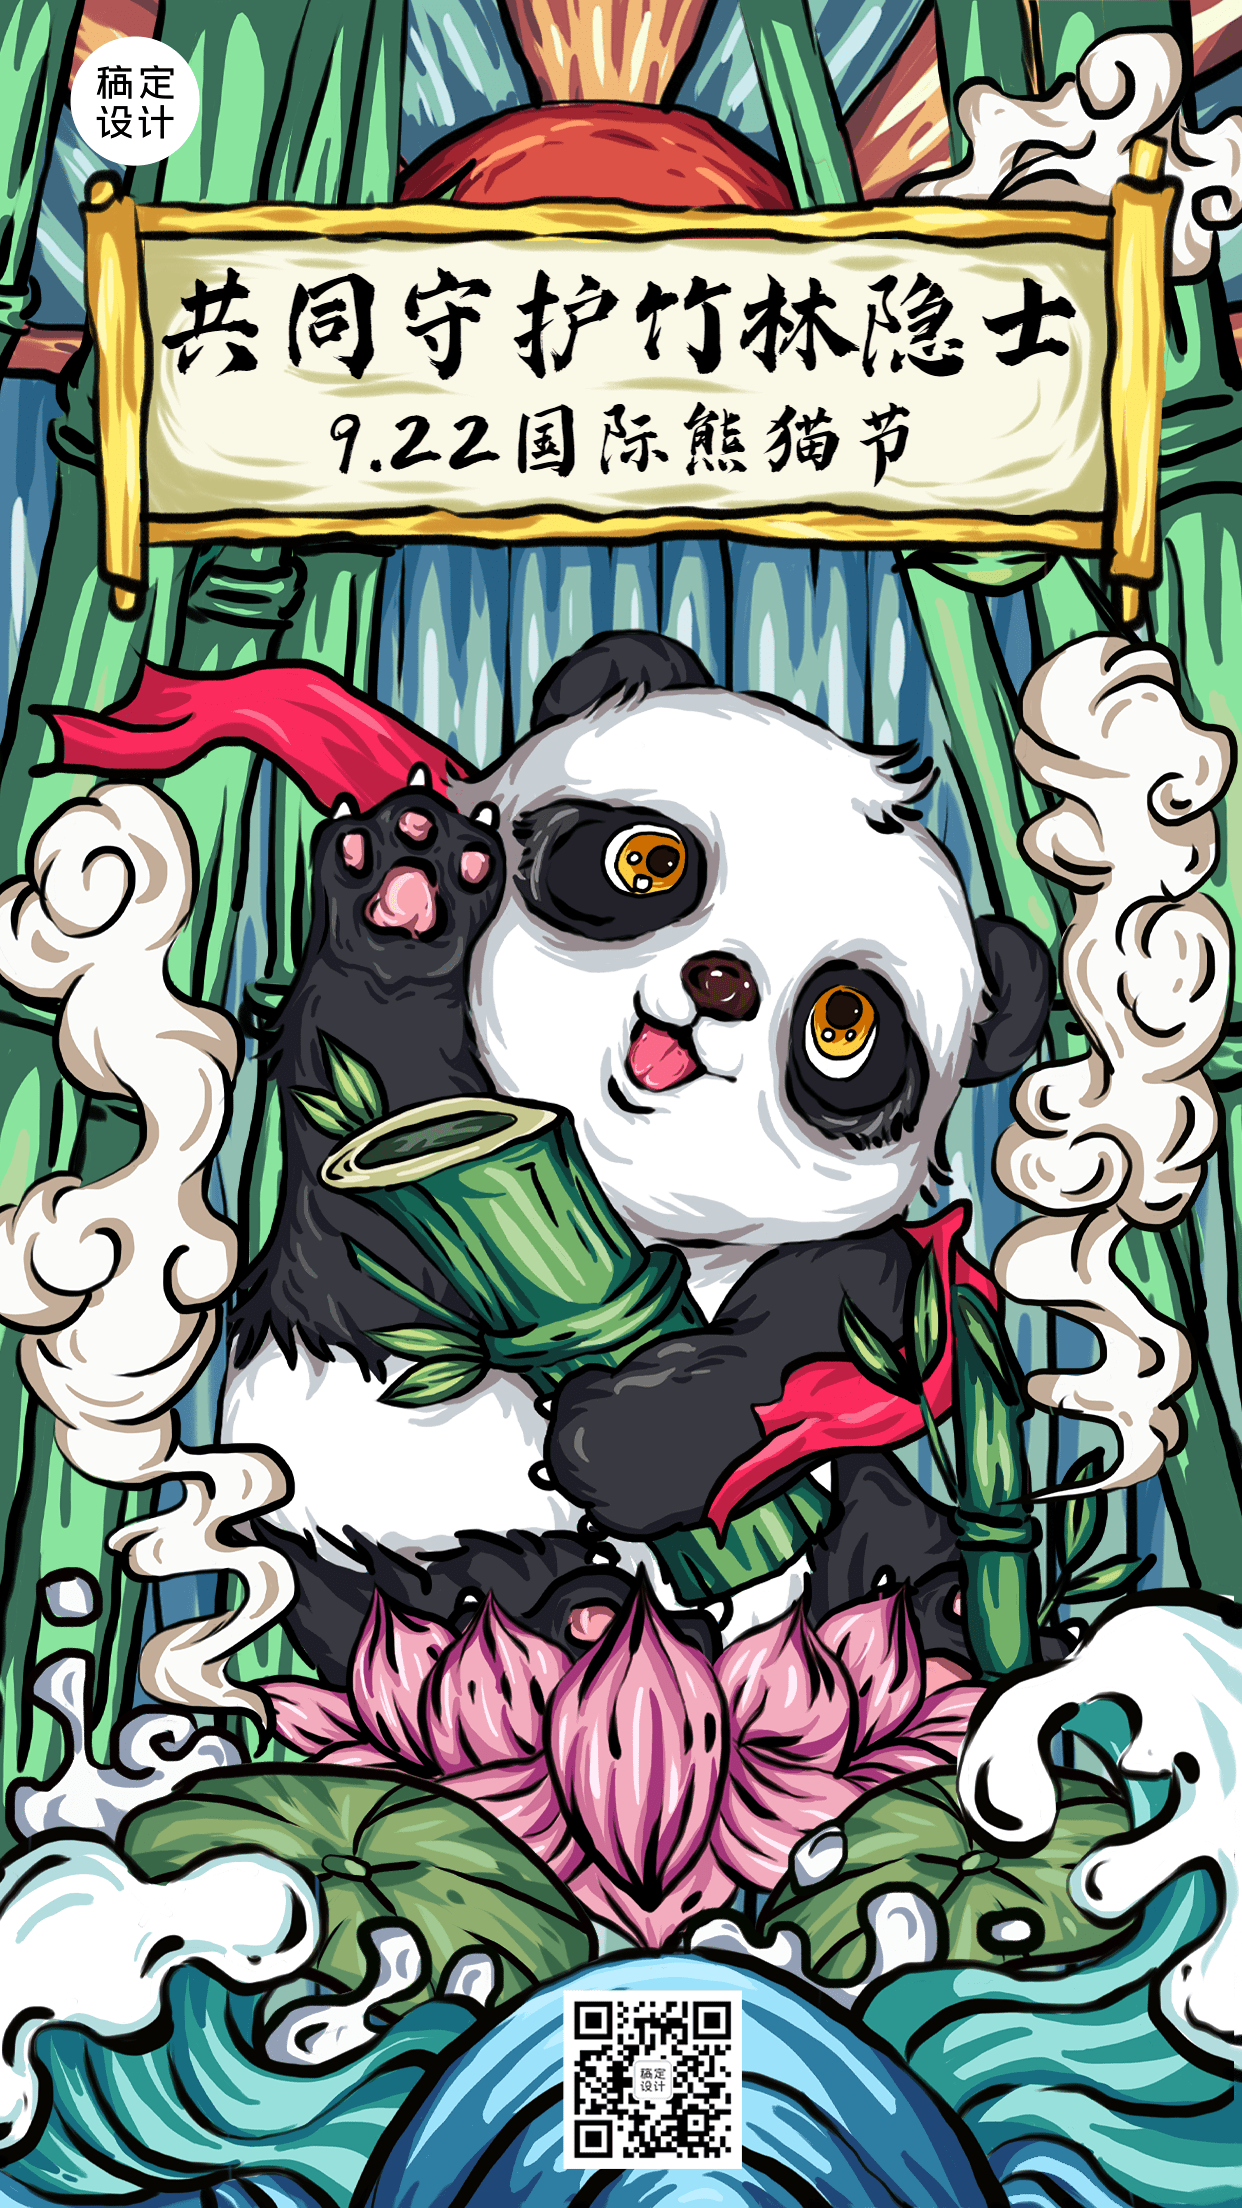 国际熊猫节节日宣传中国风插画手机海报预览效果